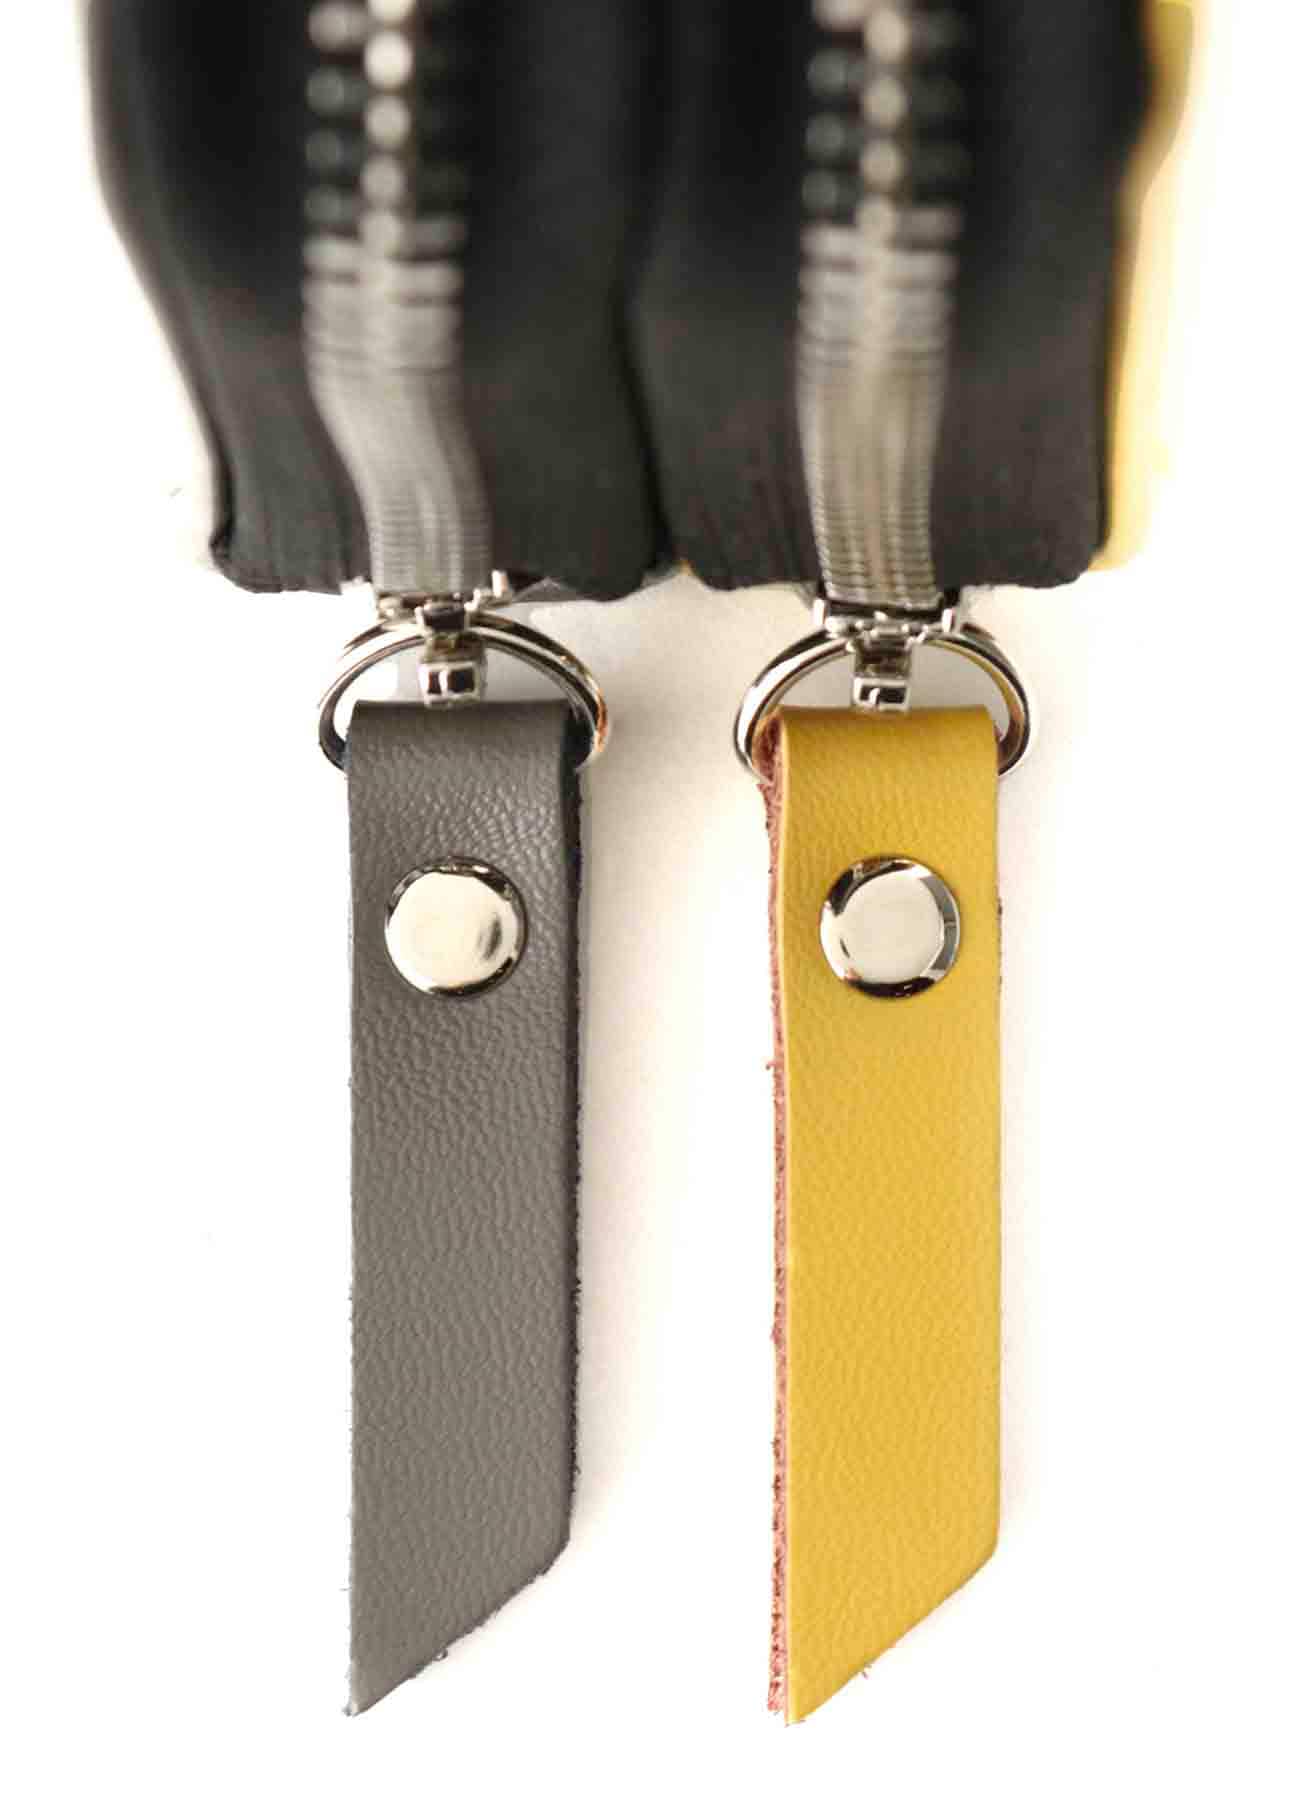 Split Leather 2 colors Zipper Wallet